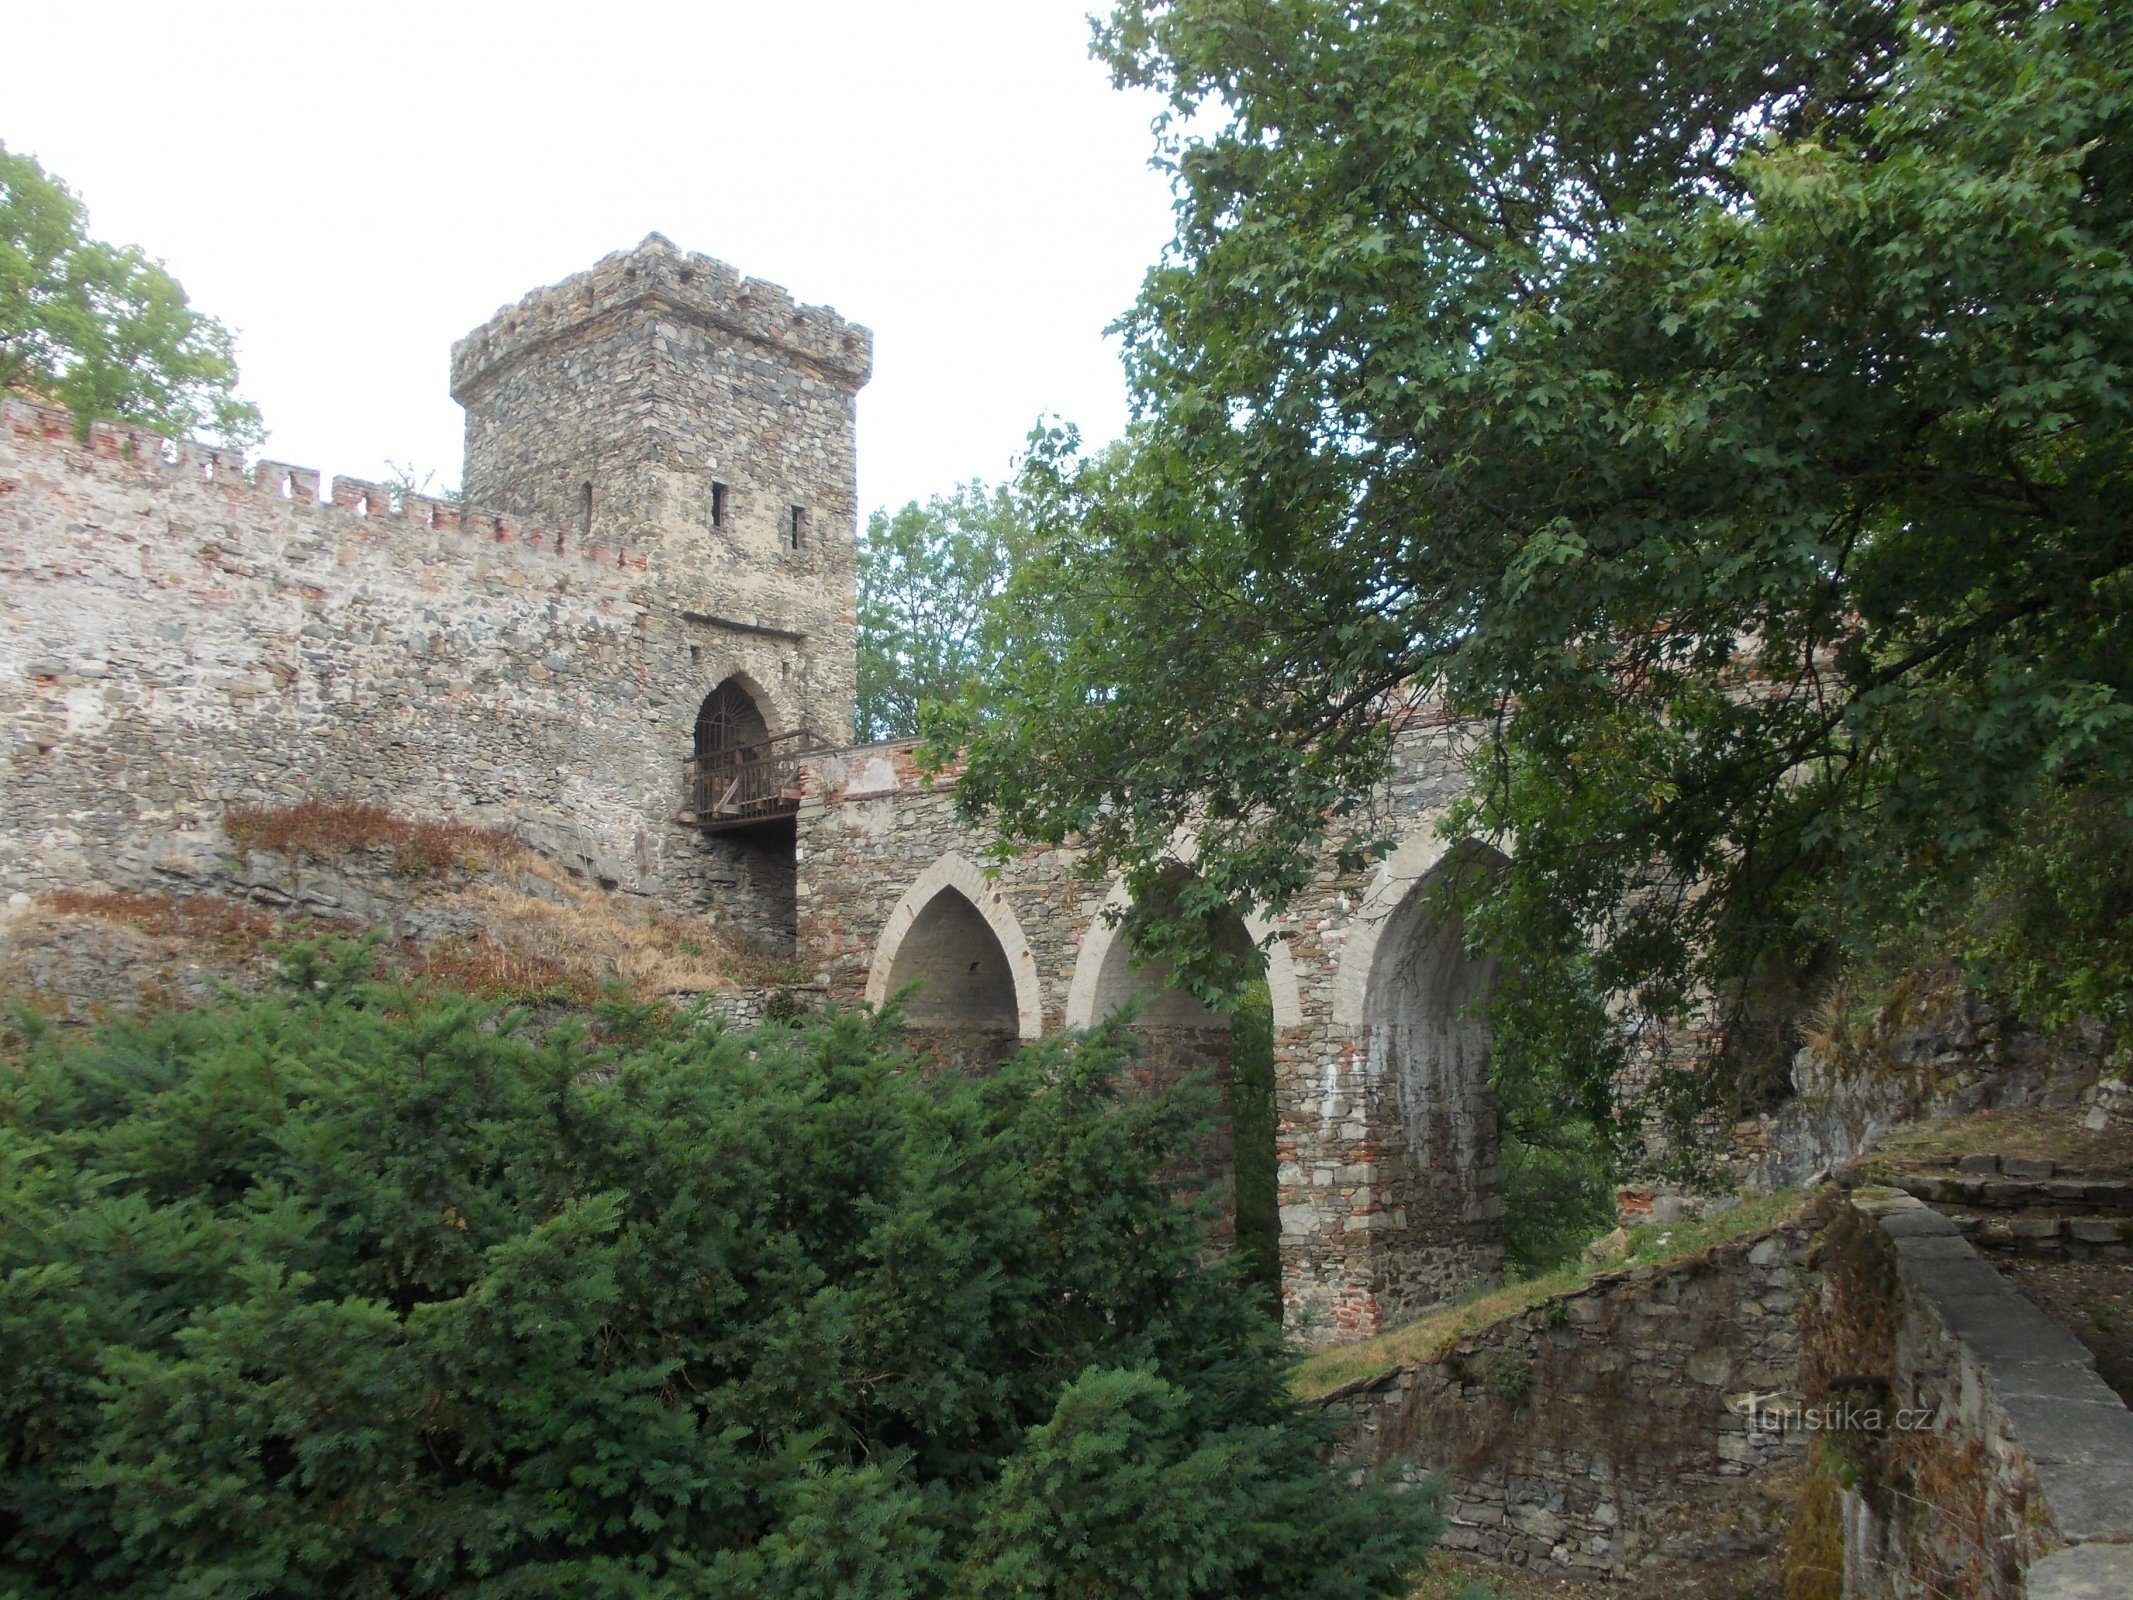 slottsmurar och infartsvägen över bron till slottet